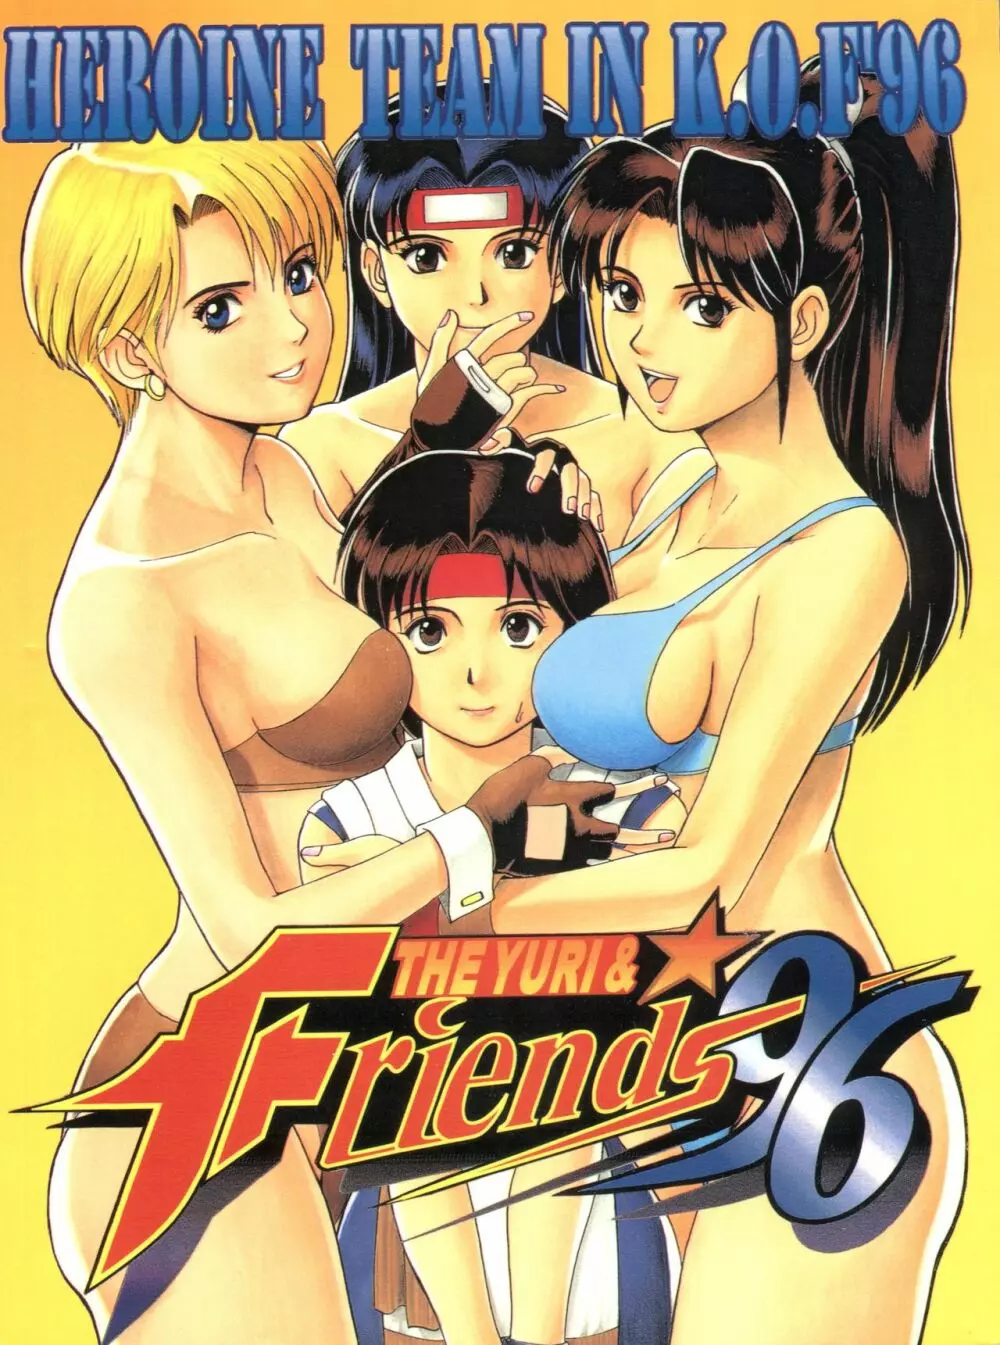 The Yuri&Friends ’96